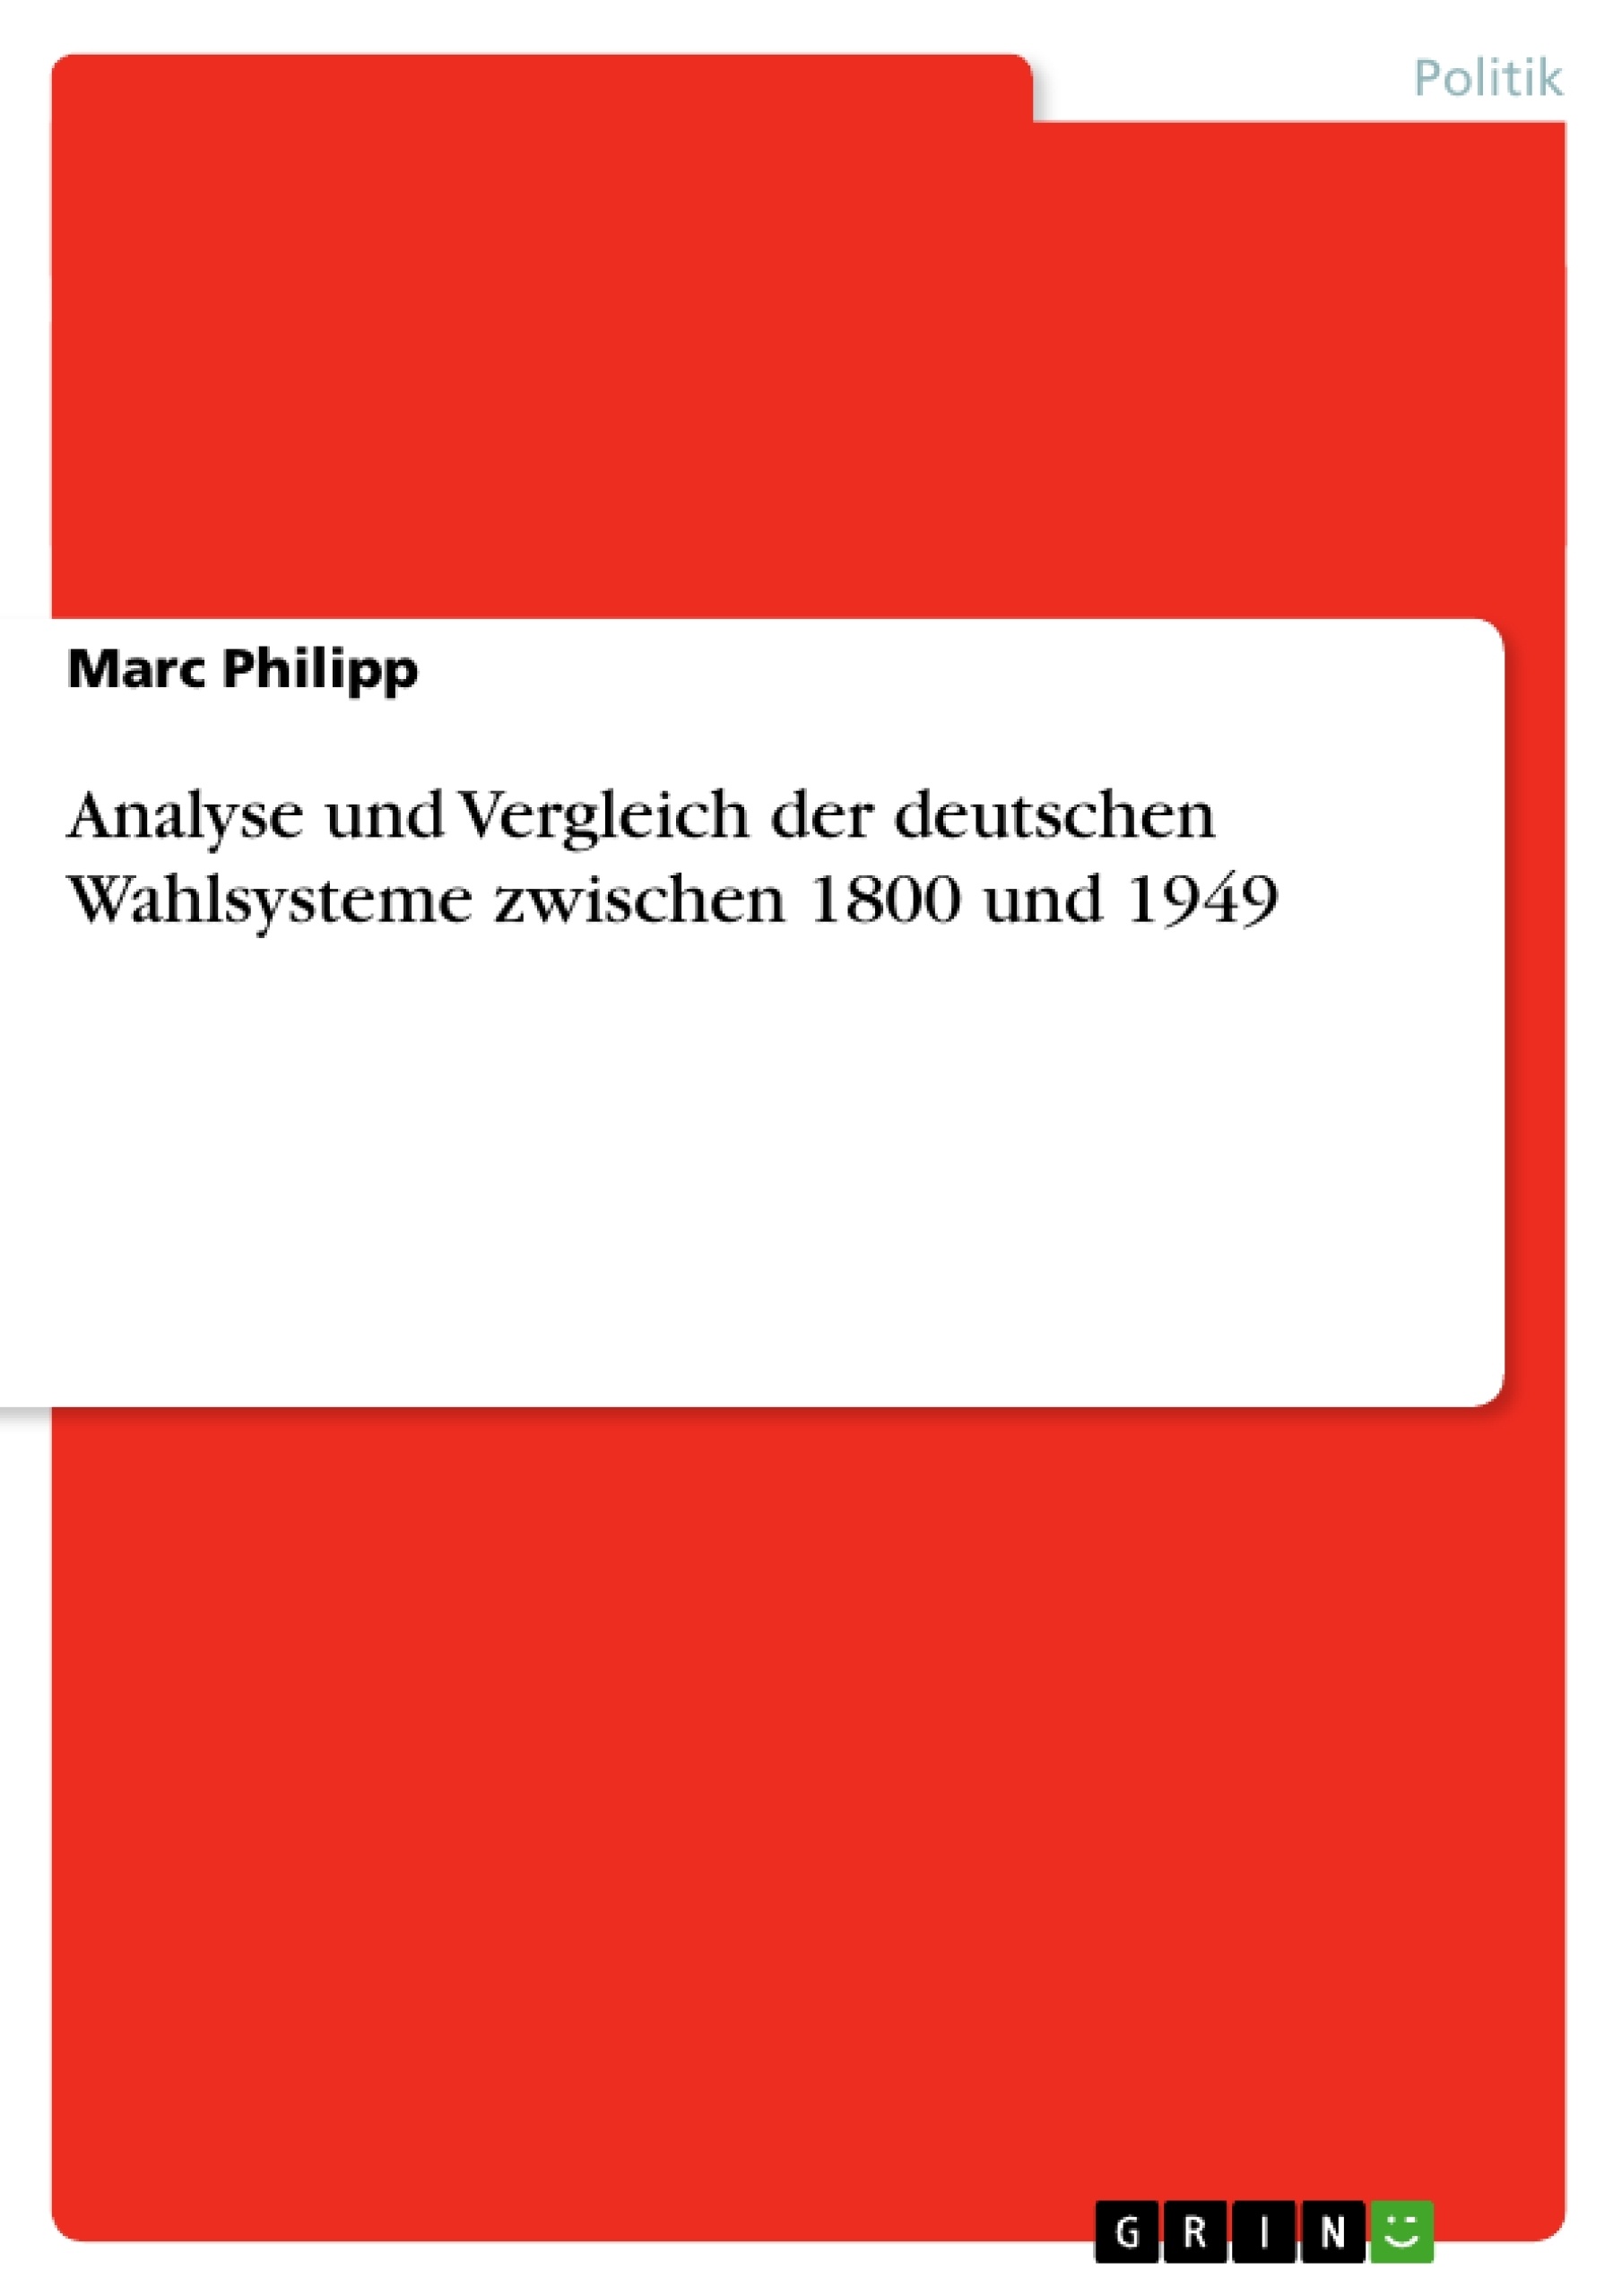 Title: Analyse und Vergleich der deutschen Wahlsysteme zwischen 1800 und 1949